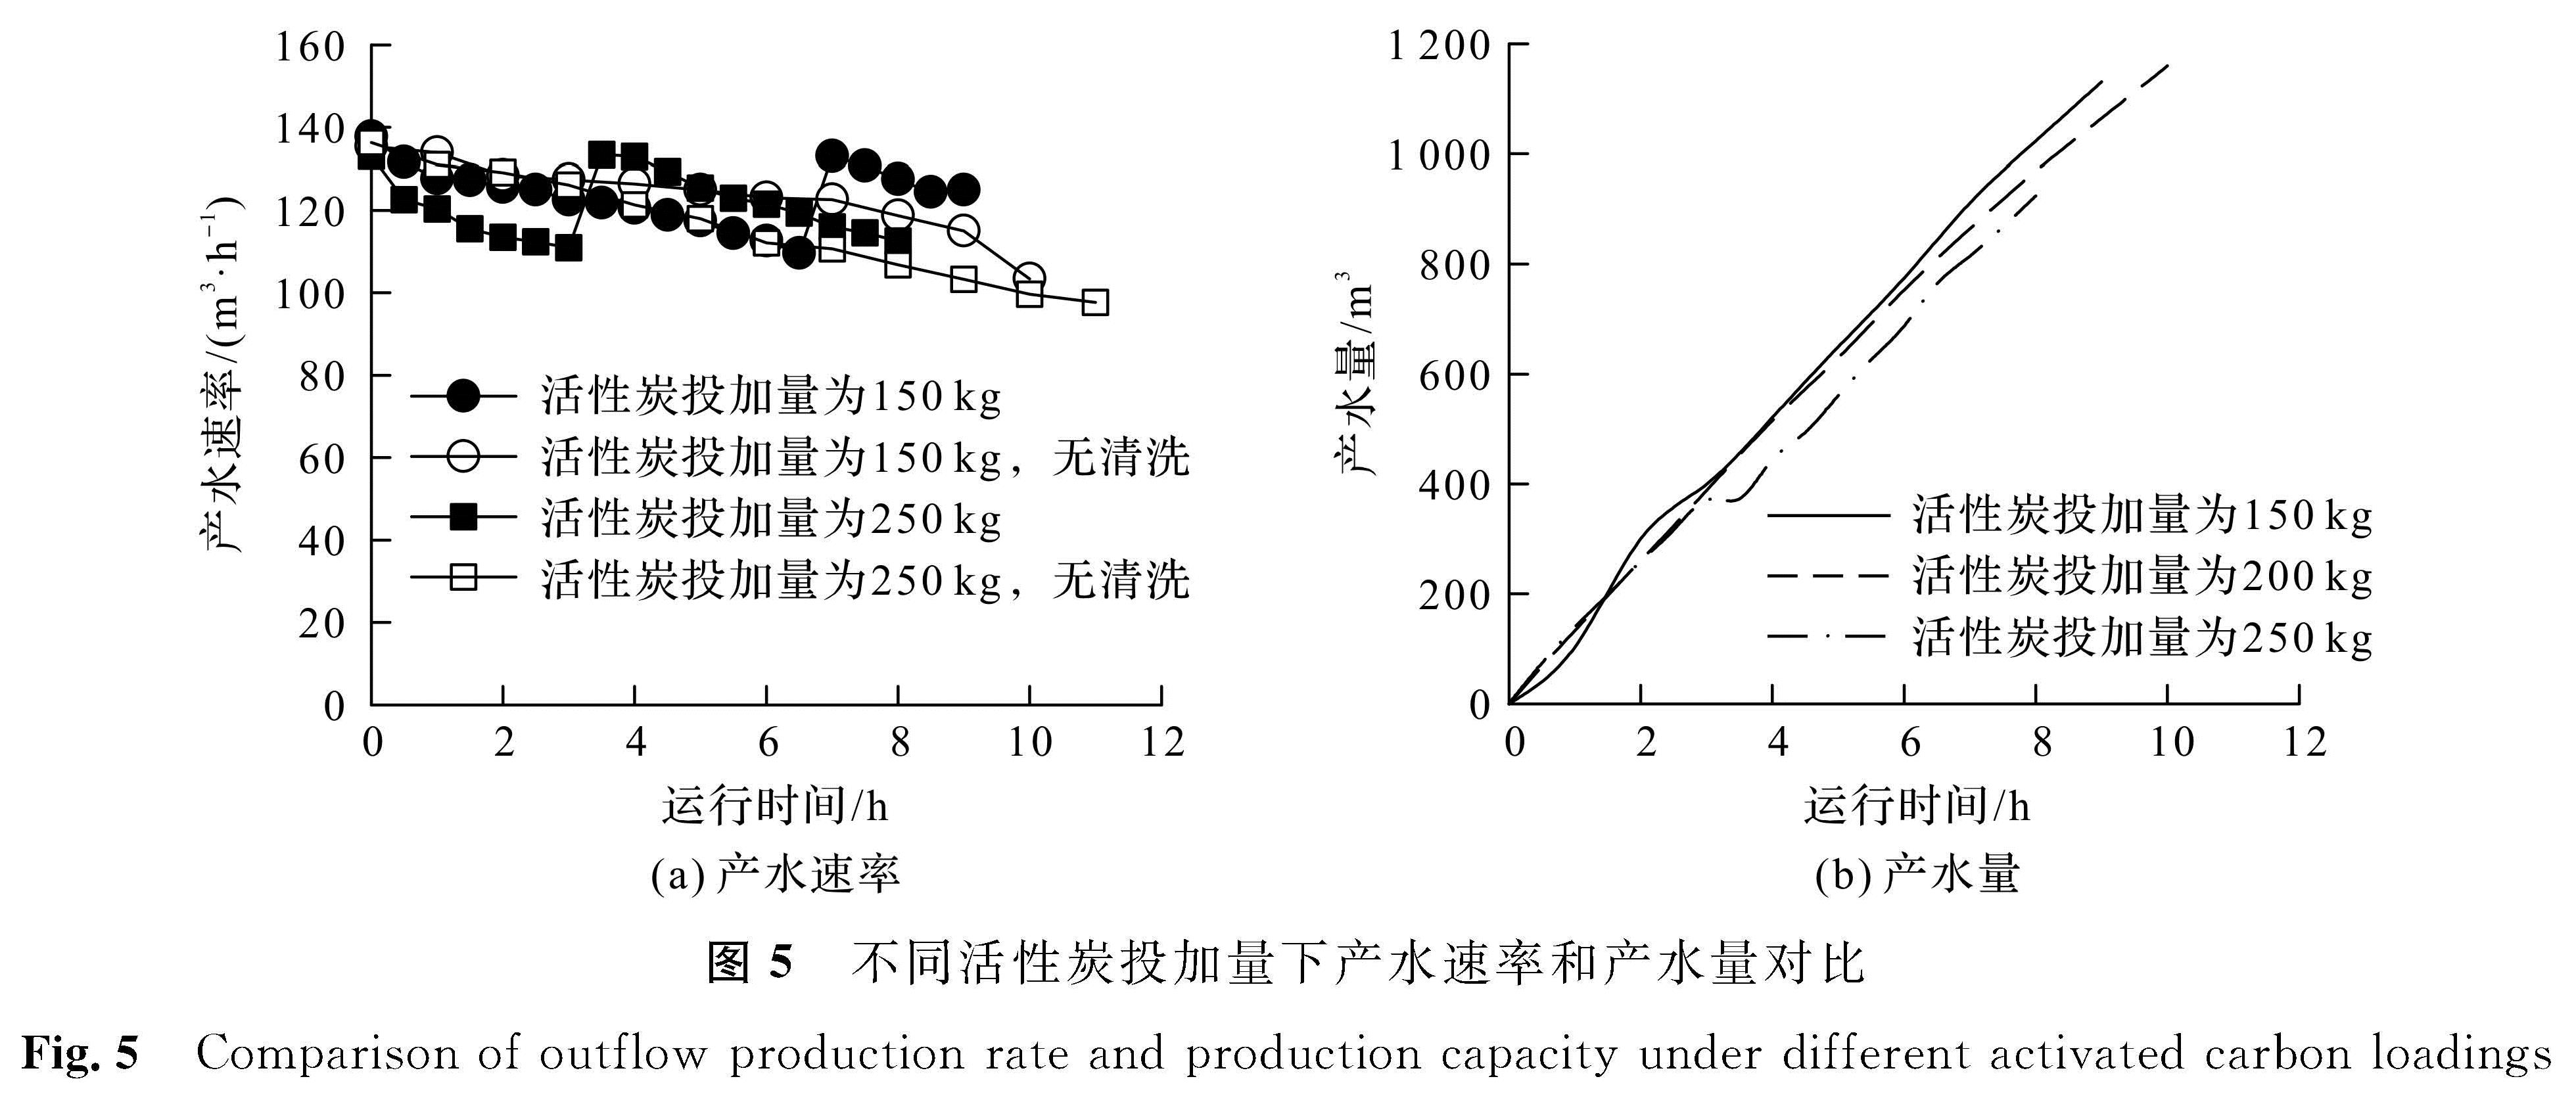 图5 不同活性炭投加量下产水速率和产水量对比<br/>Fig.5 Comparison of outflow production rate and production capacity under different activated carbon loadings